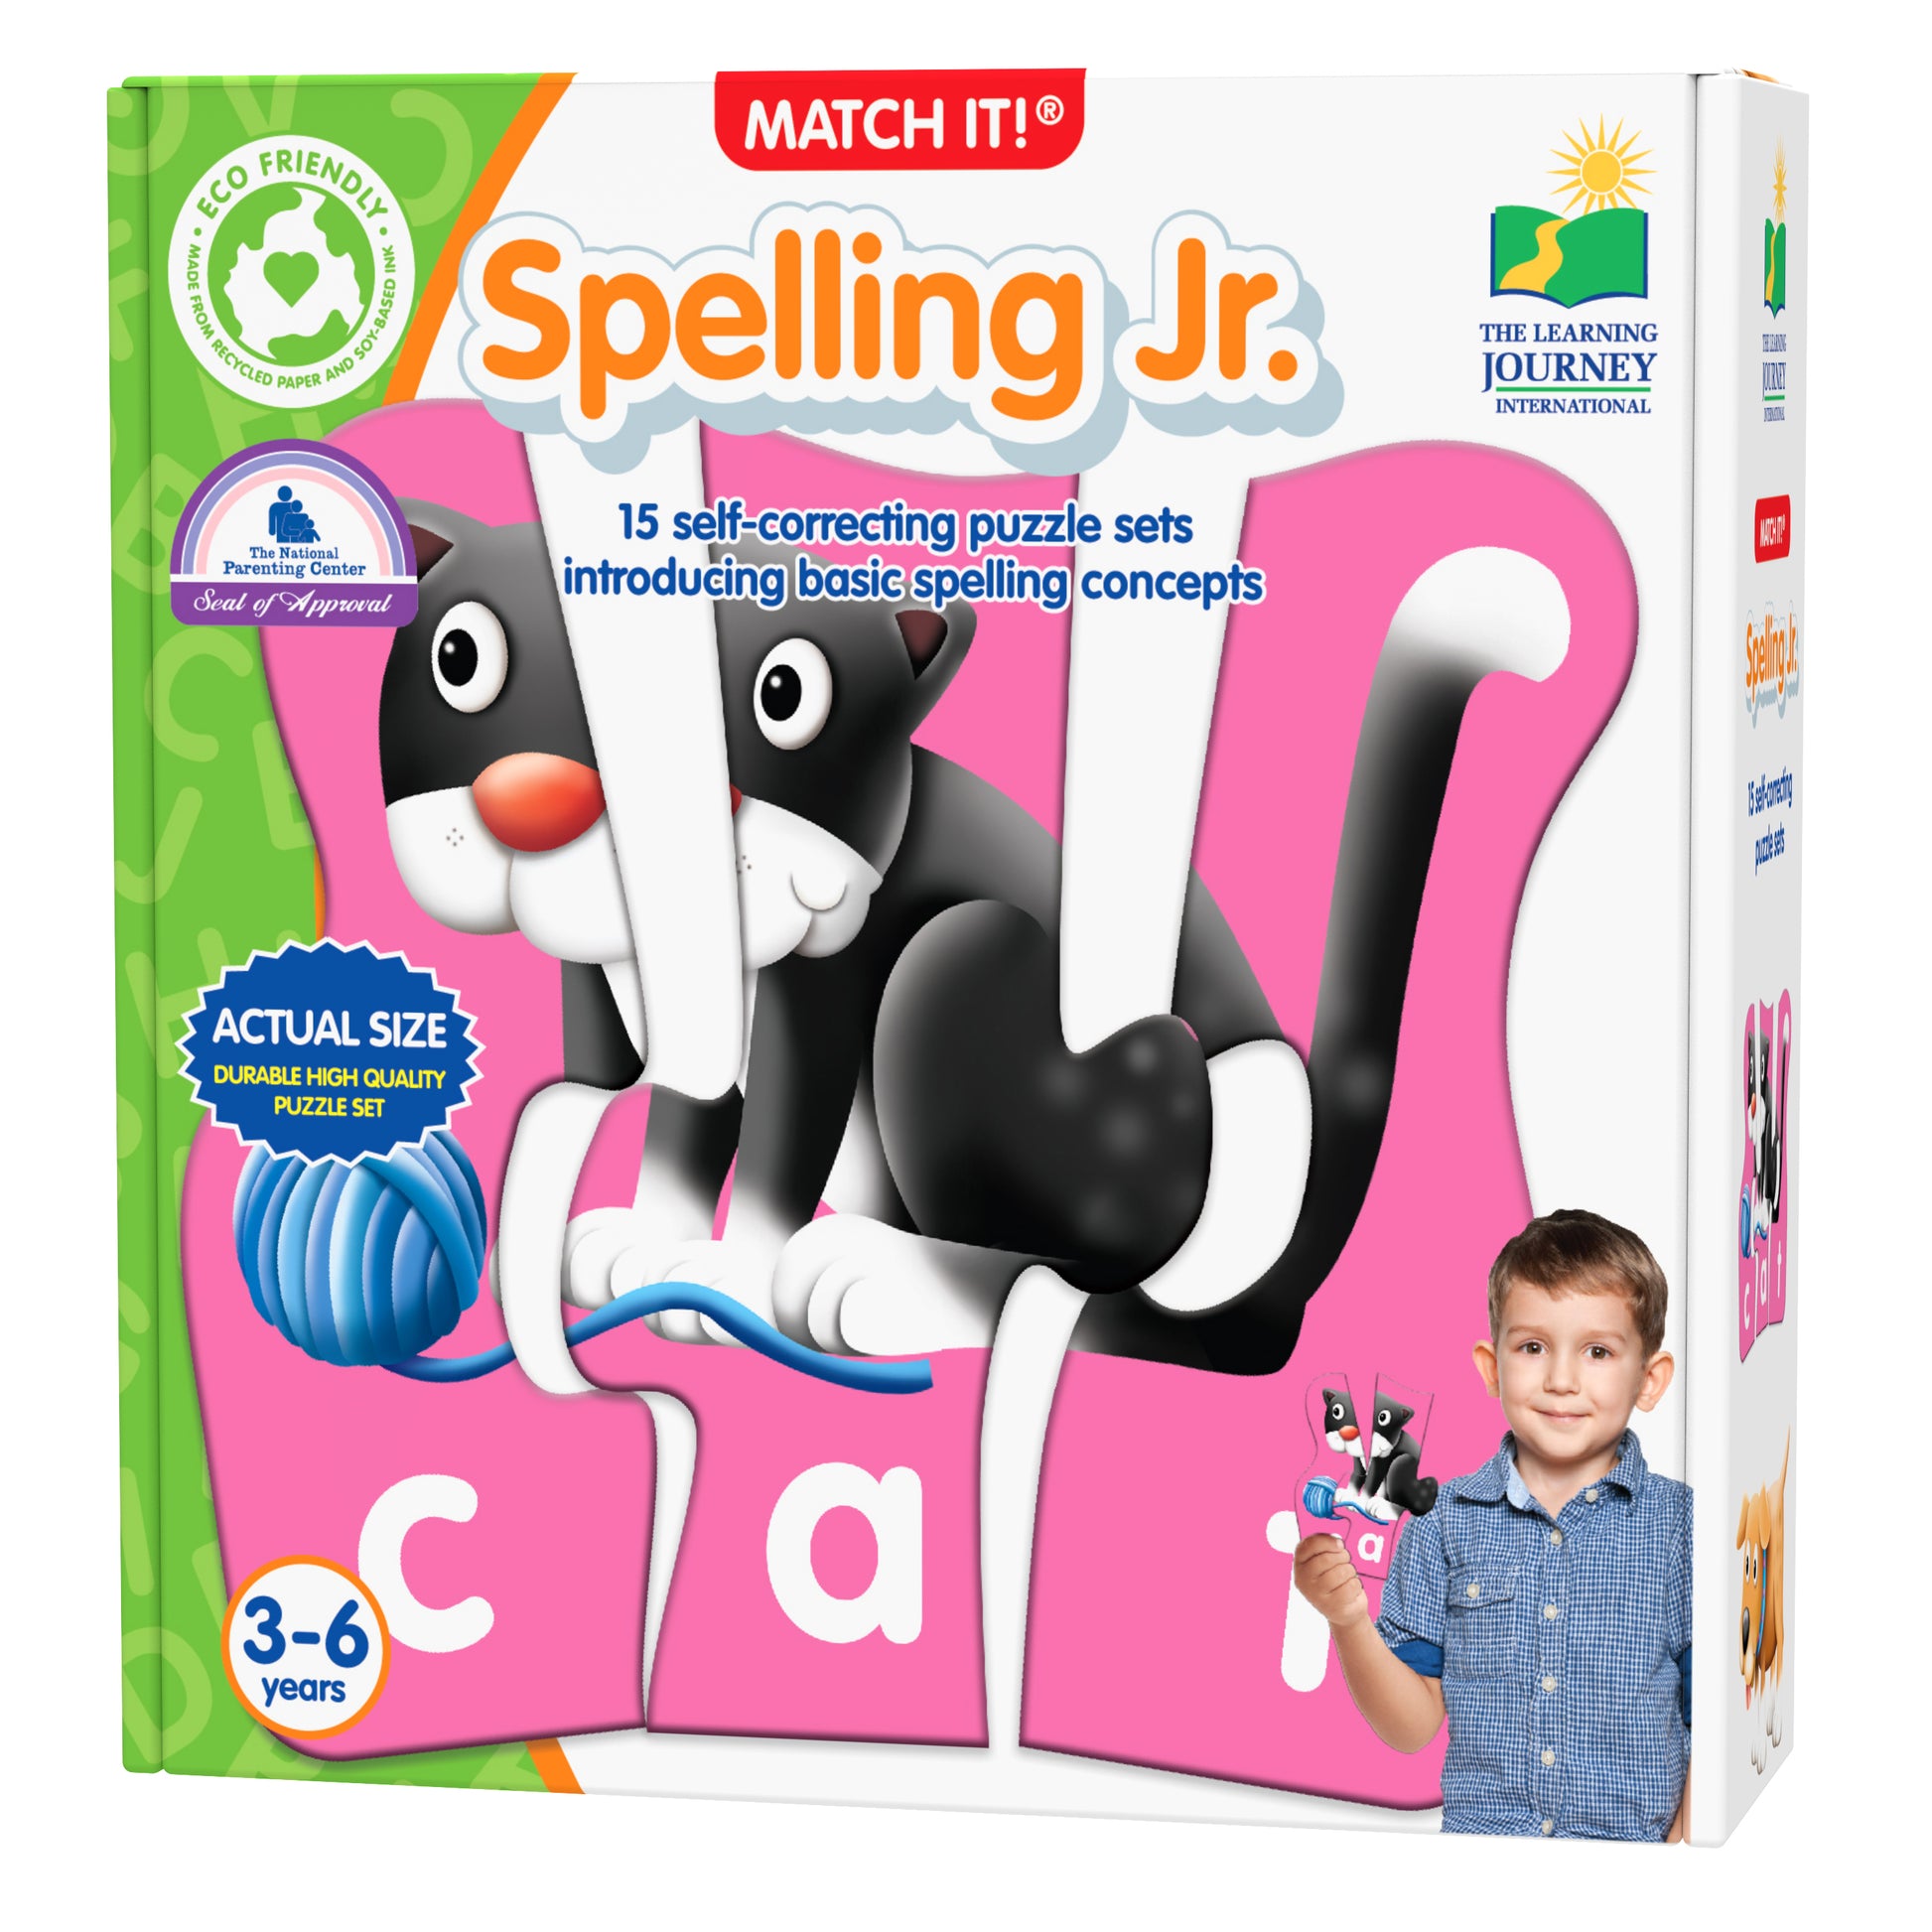 Match It - Spelling Jr packaging